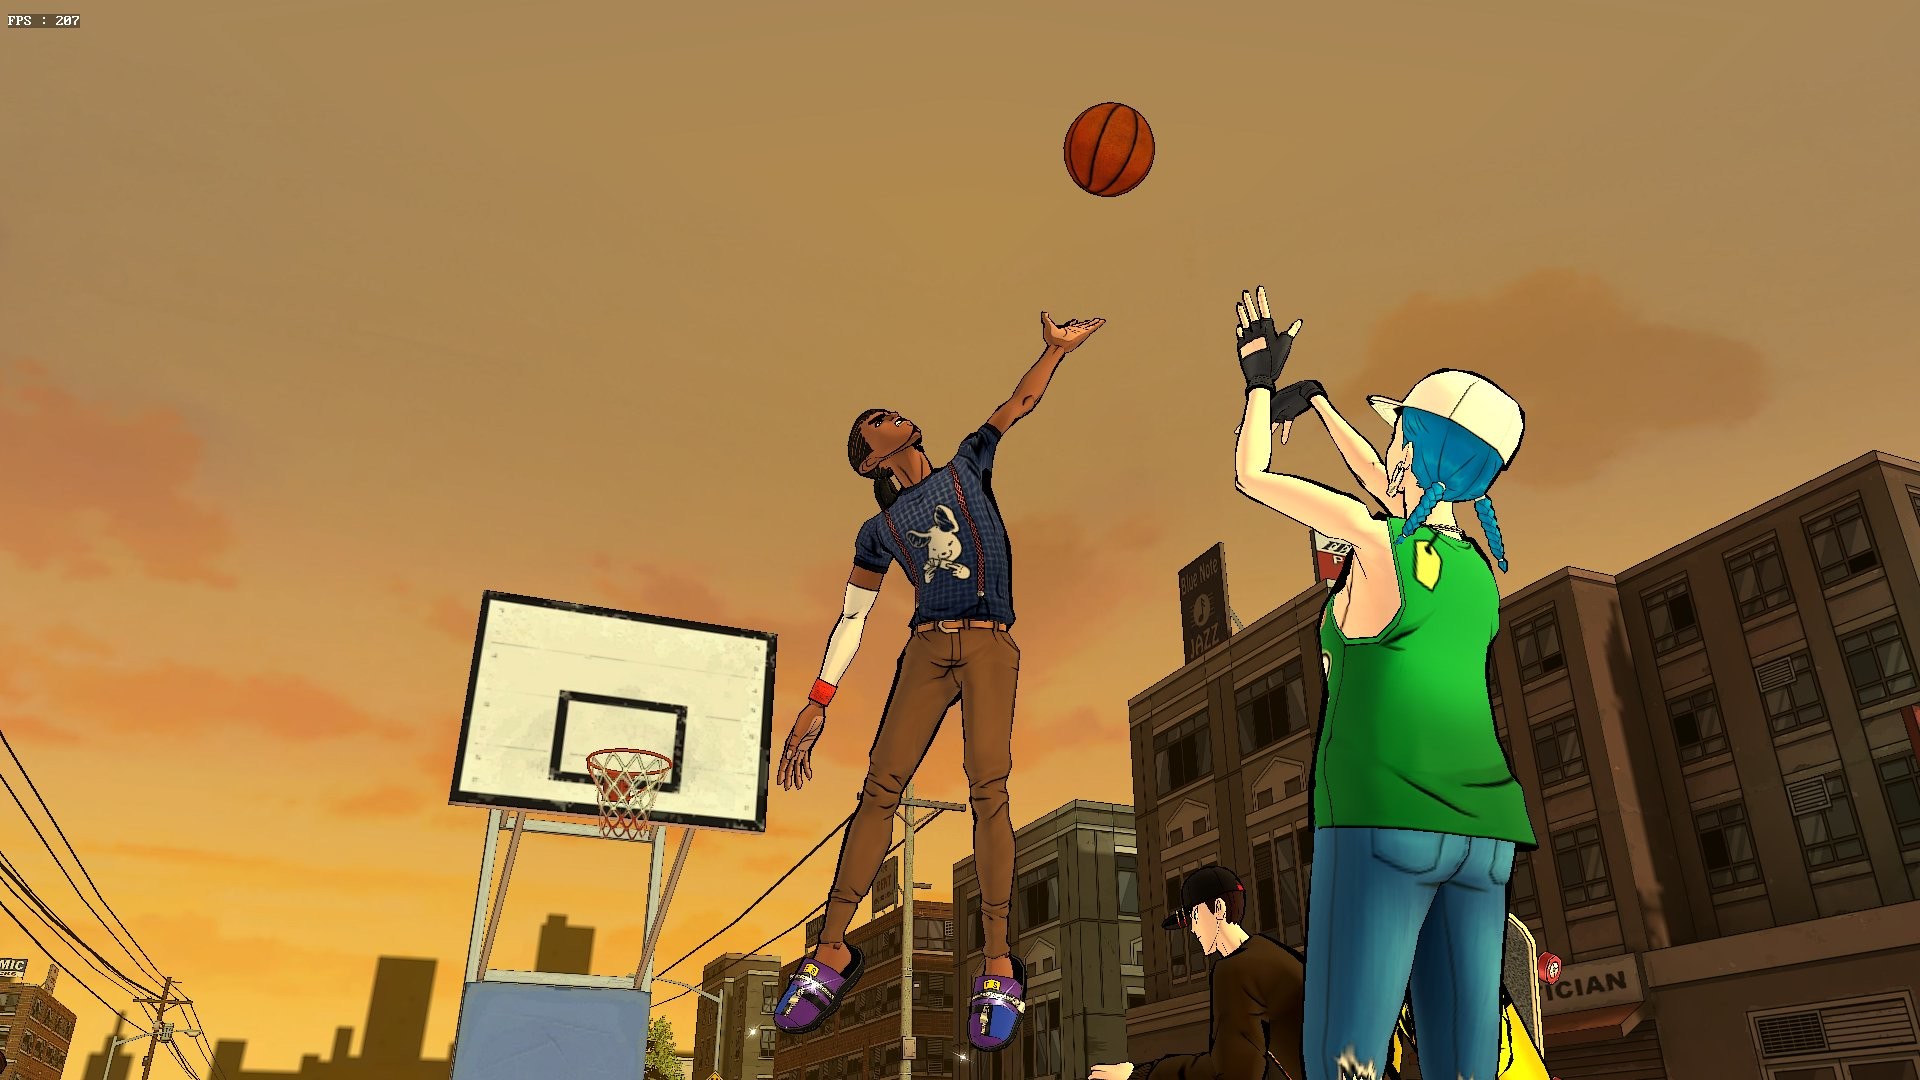 Игра в уличный баскетбол